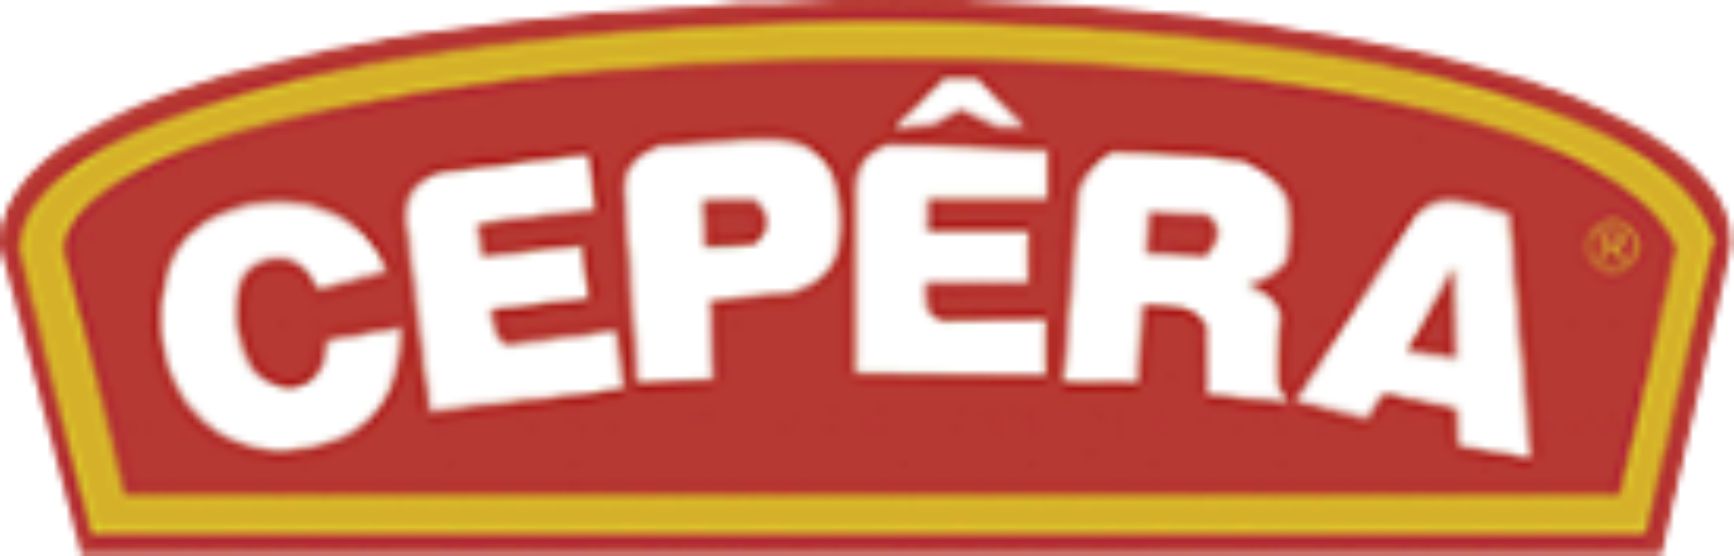 cepera